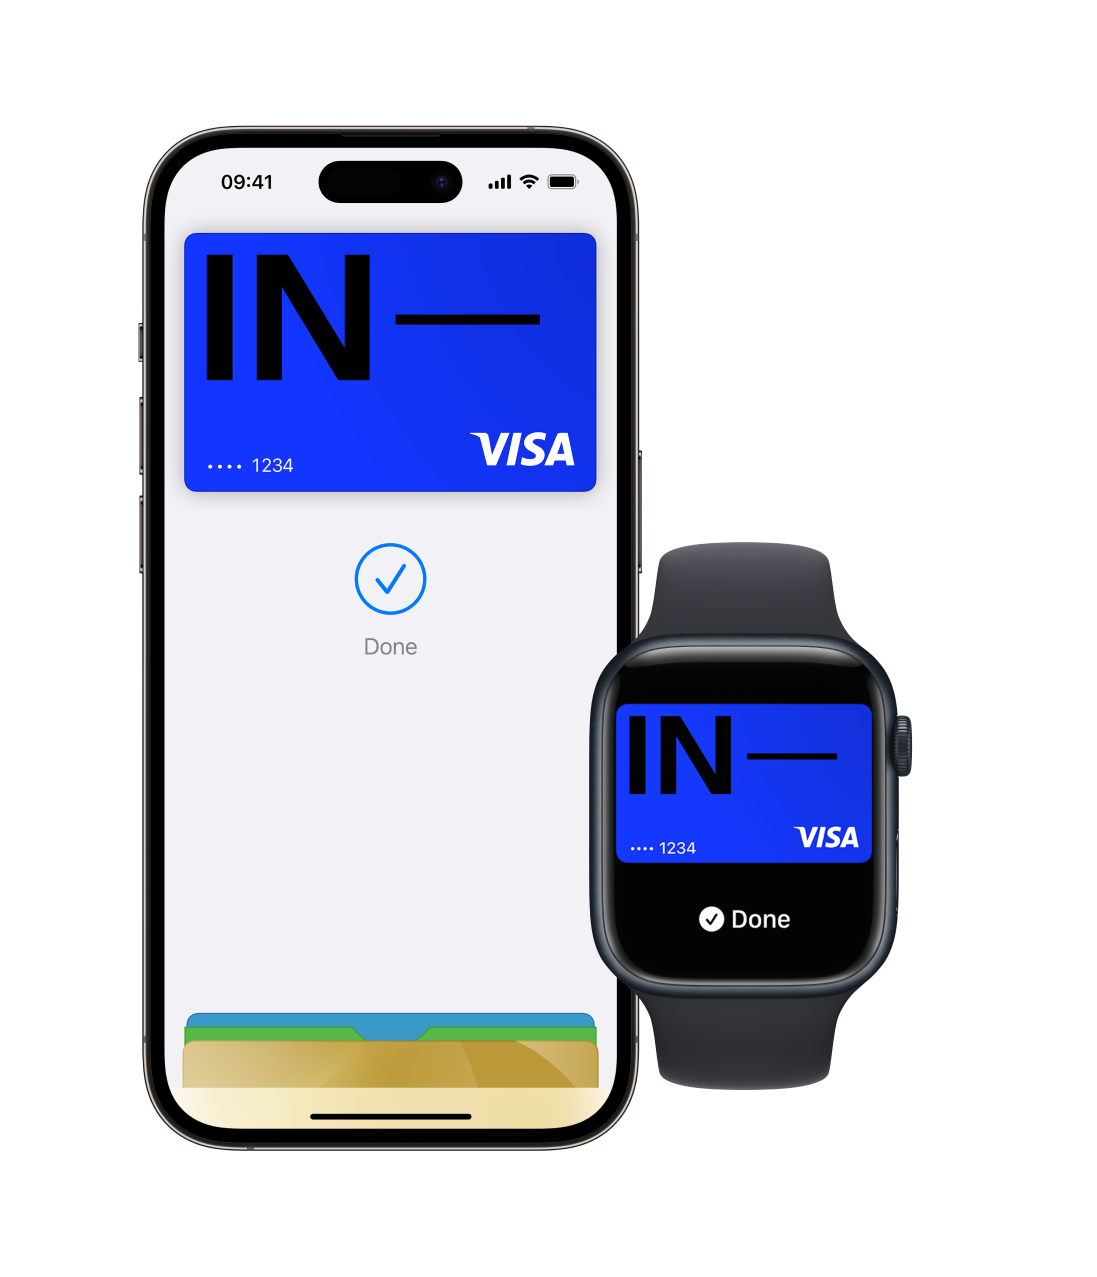 Immagine di un iPhone e Apple Watch che mostra l'app Apple Wallet e diverse carte con la carta Incharge posizionata sopra. Questa immagine mostra la funzione Apple Pay con funzionalità di portafoglio digitale.